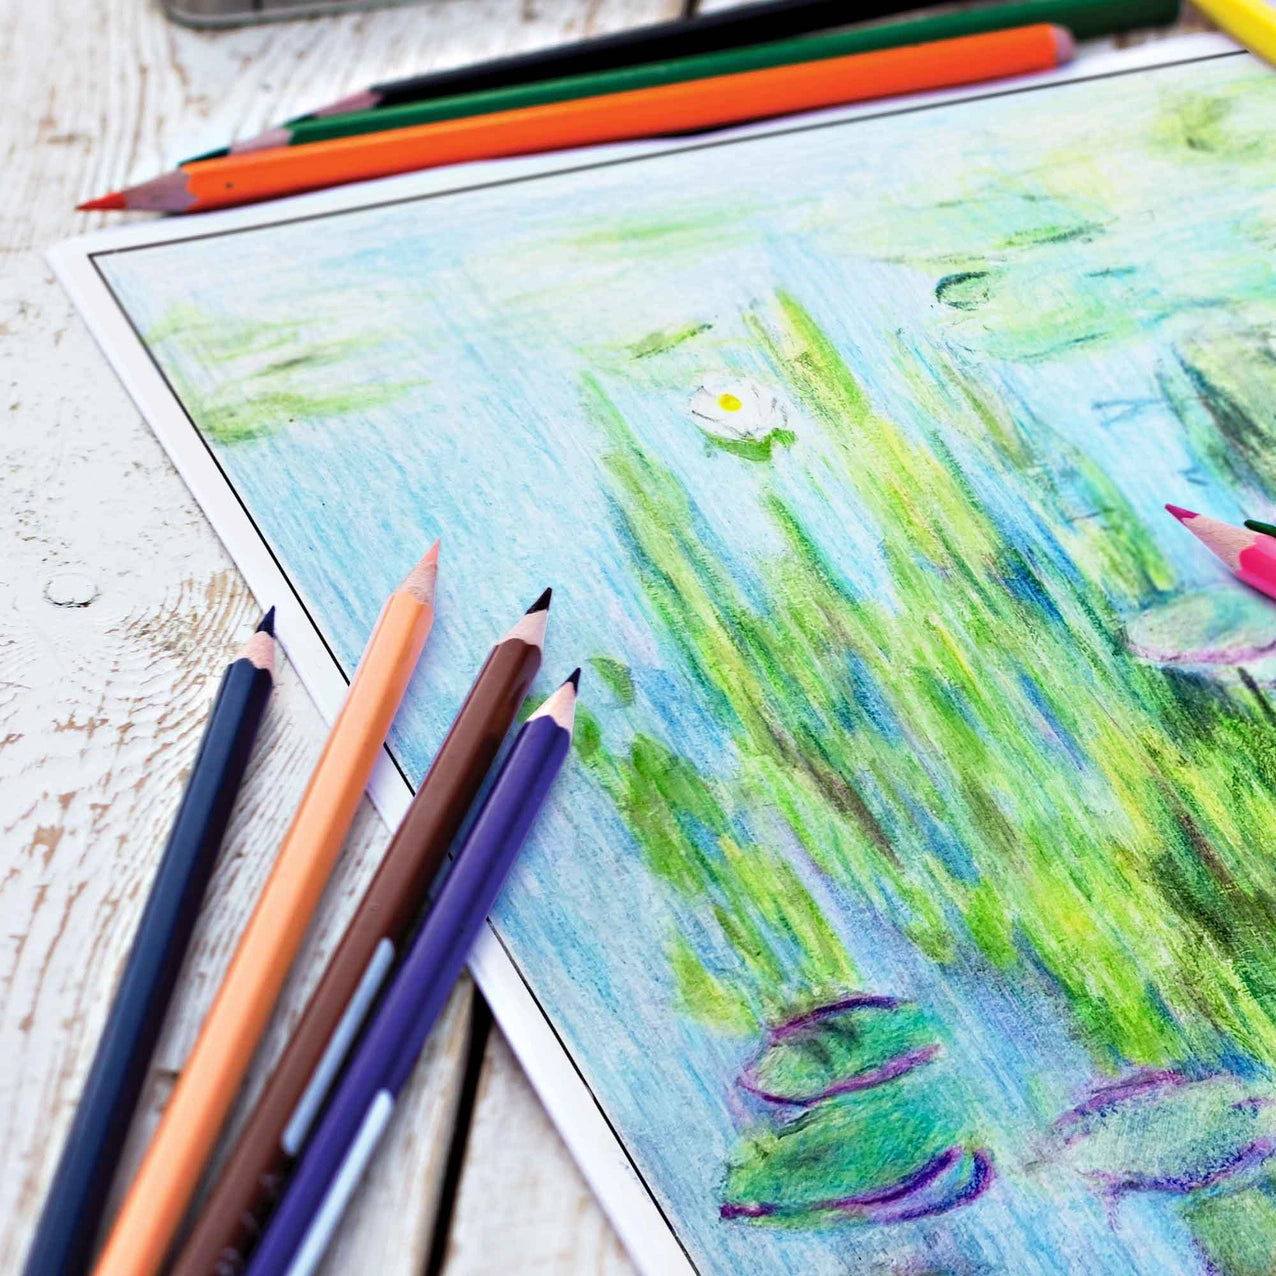 Monet Colors Colored Pencil Set of 12